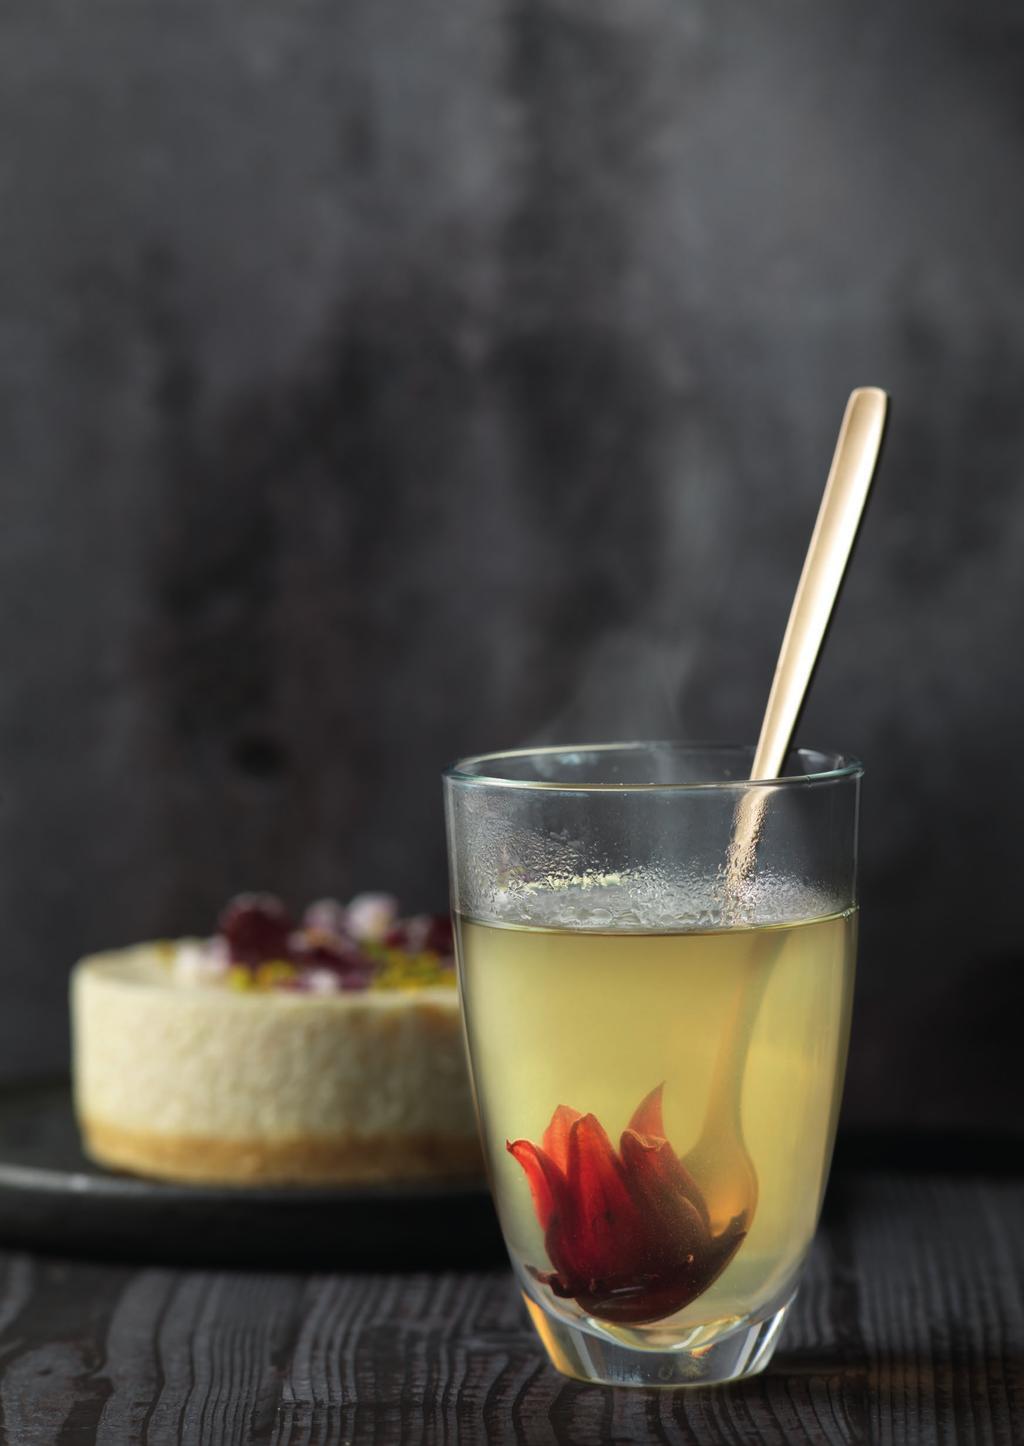 BLOSSOM DREAM Asiatischer Weißer Tee mit Hibiskusblüte... die elegante Art asiatisch zu genießen Asiatischer Weißer Tee & Rose 2 l Wasser 10 Stk.